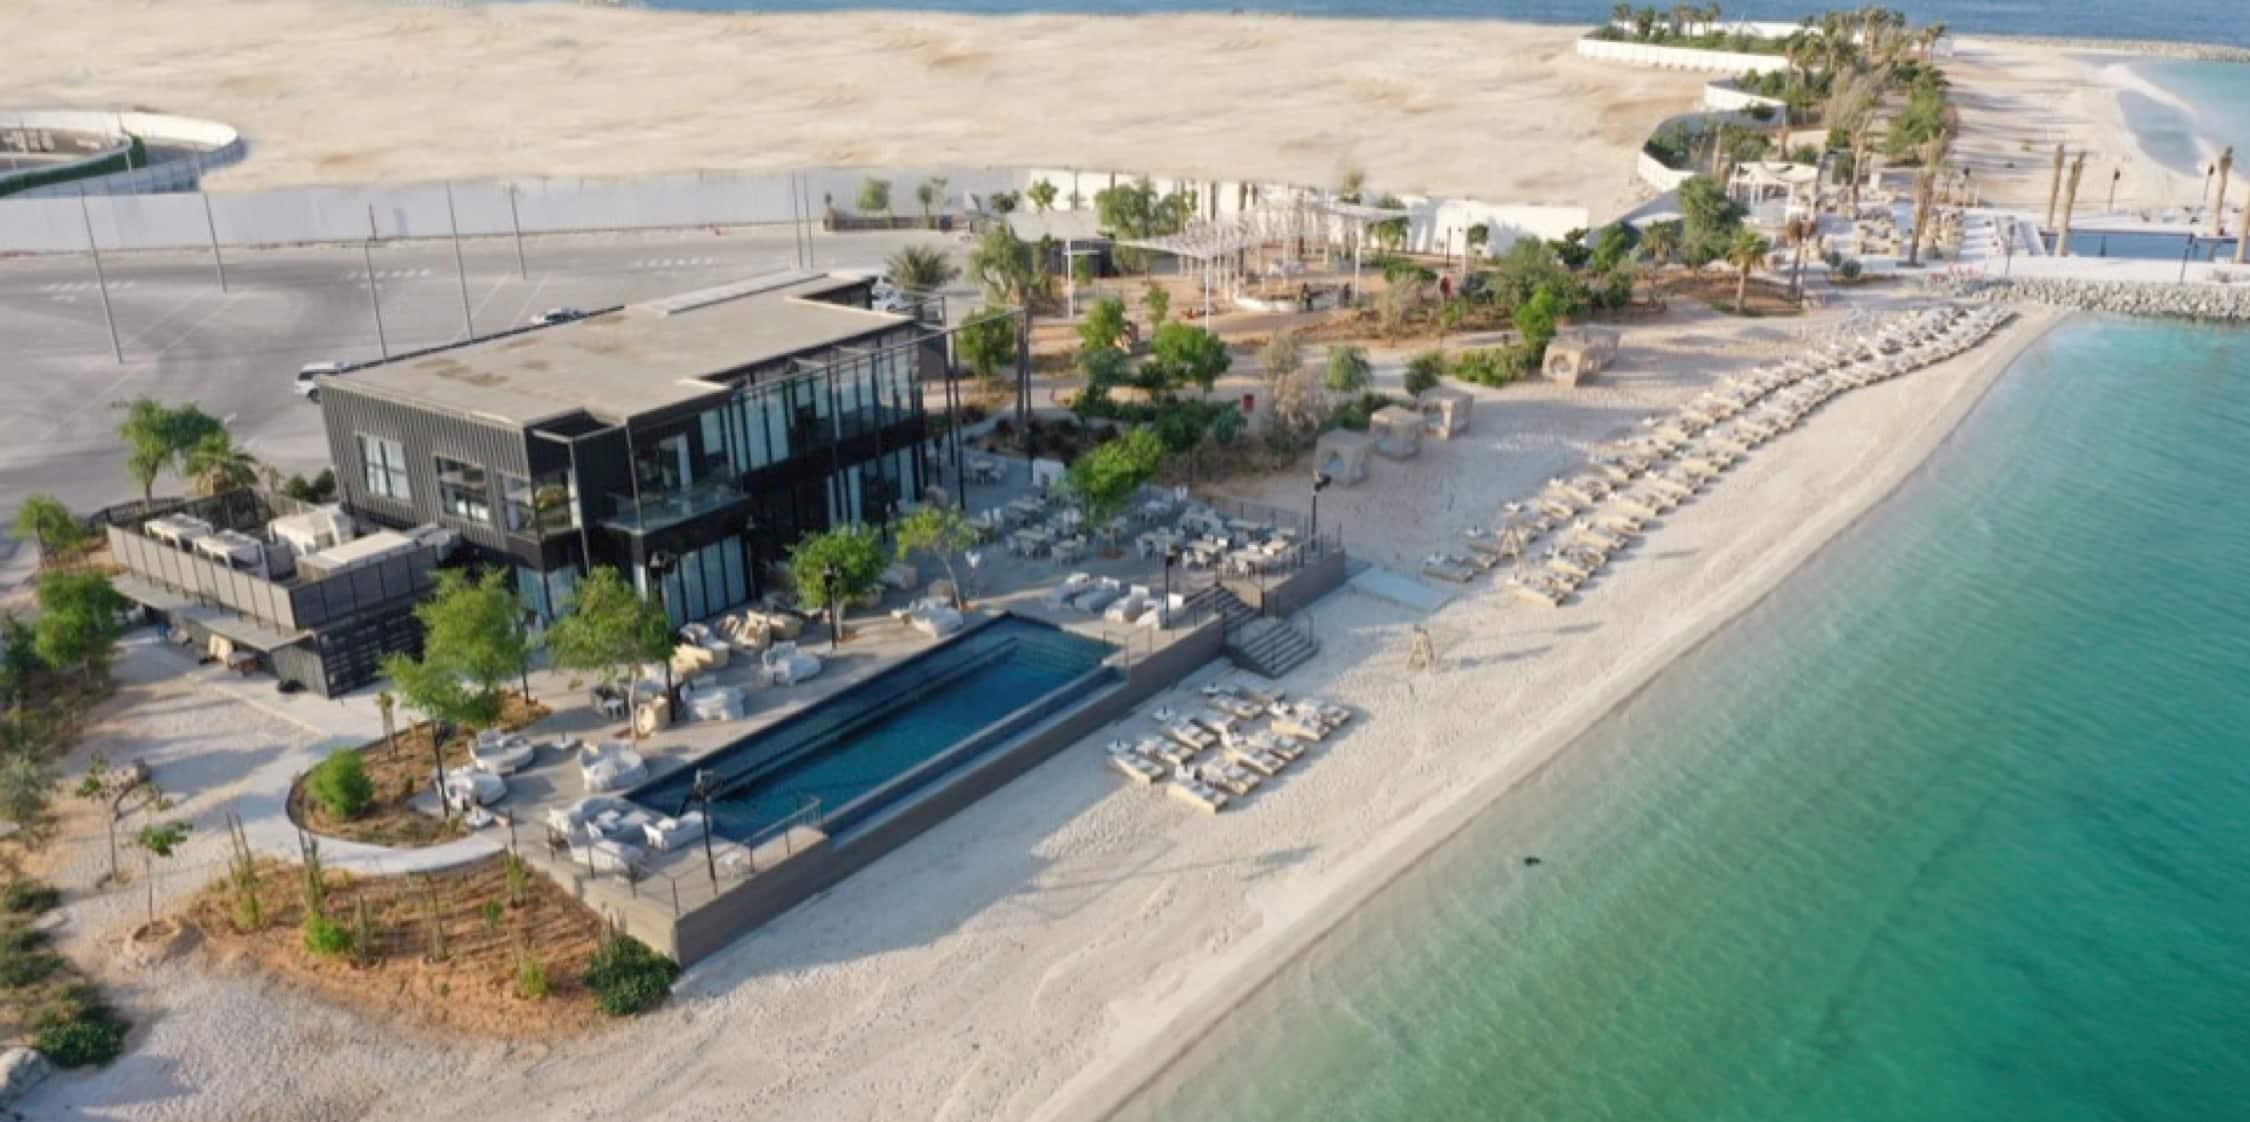 Cove Beach Abu Dhabi